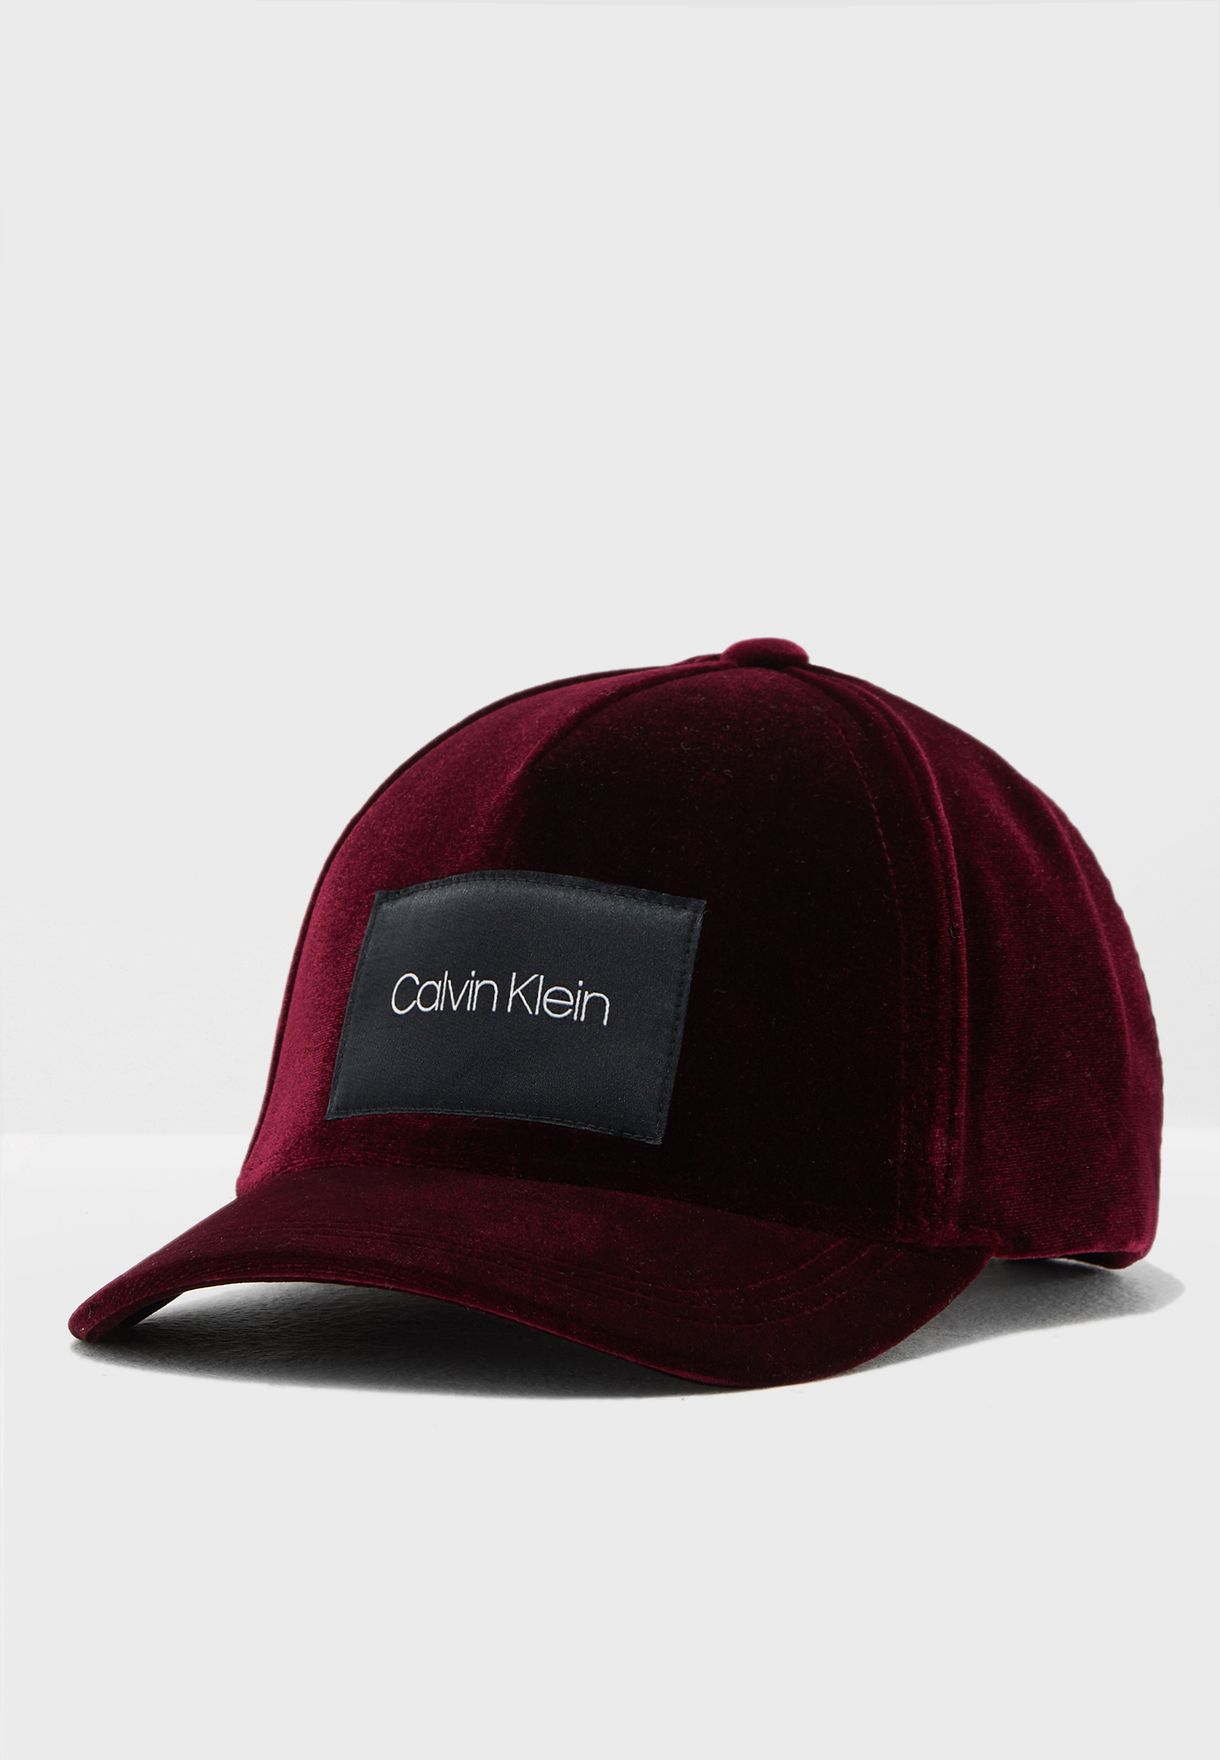 calvin klein velvet cap